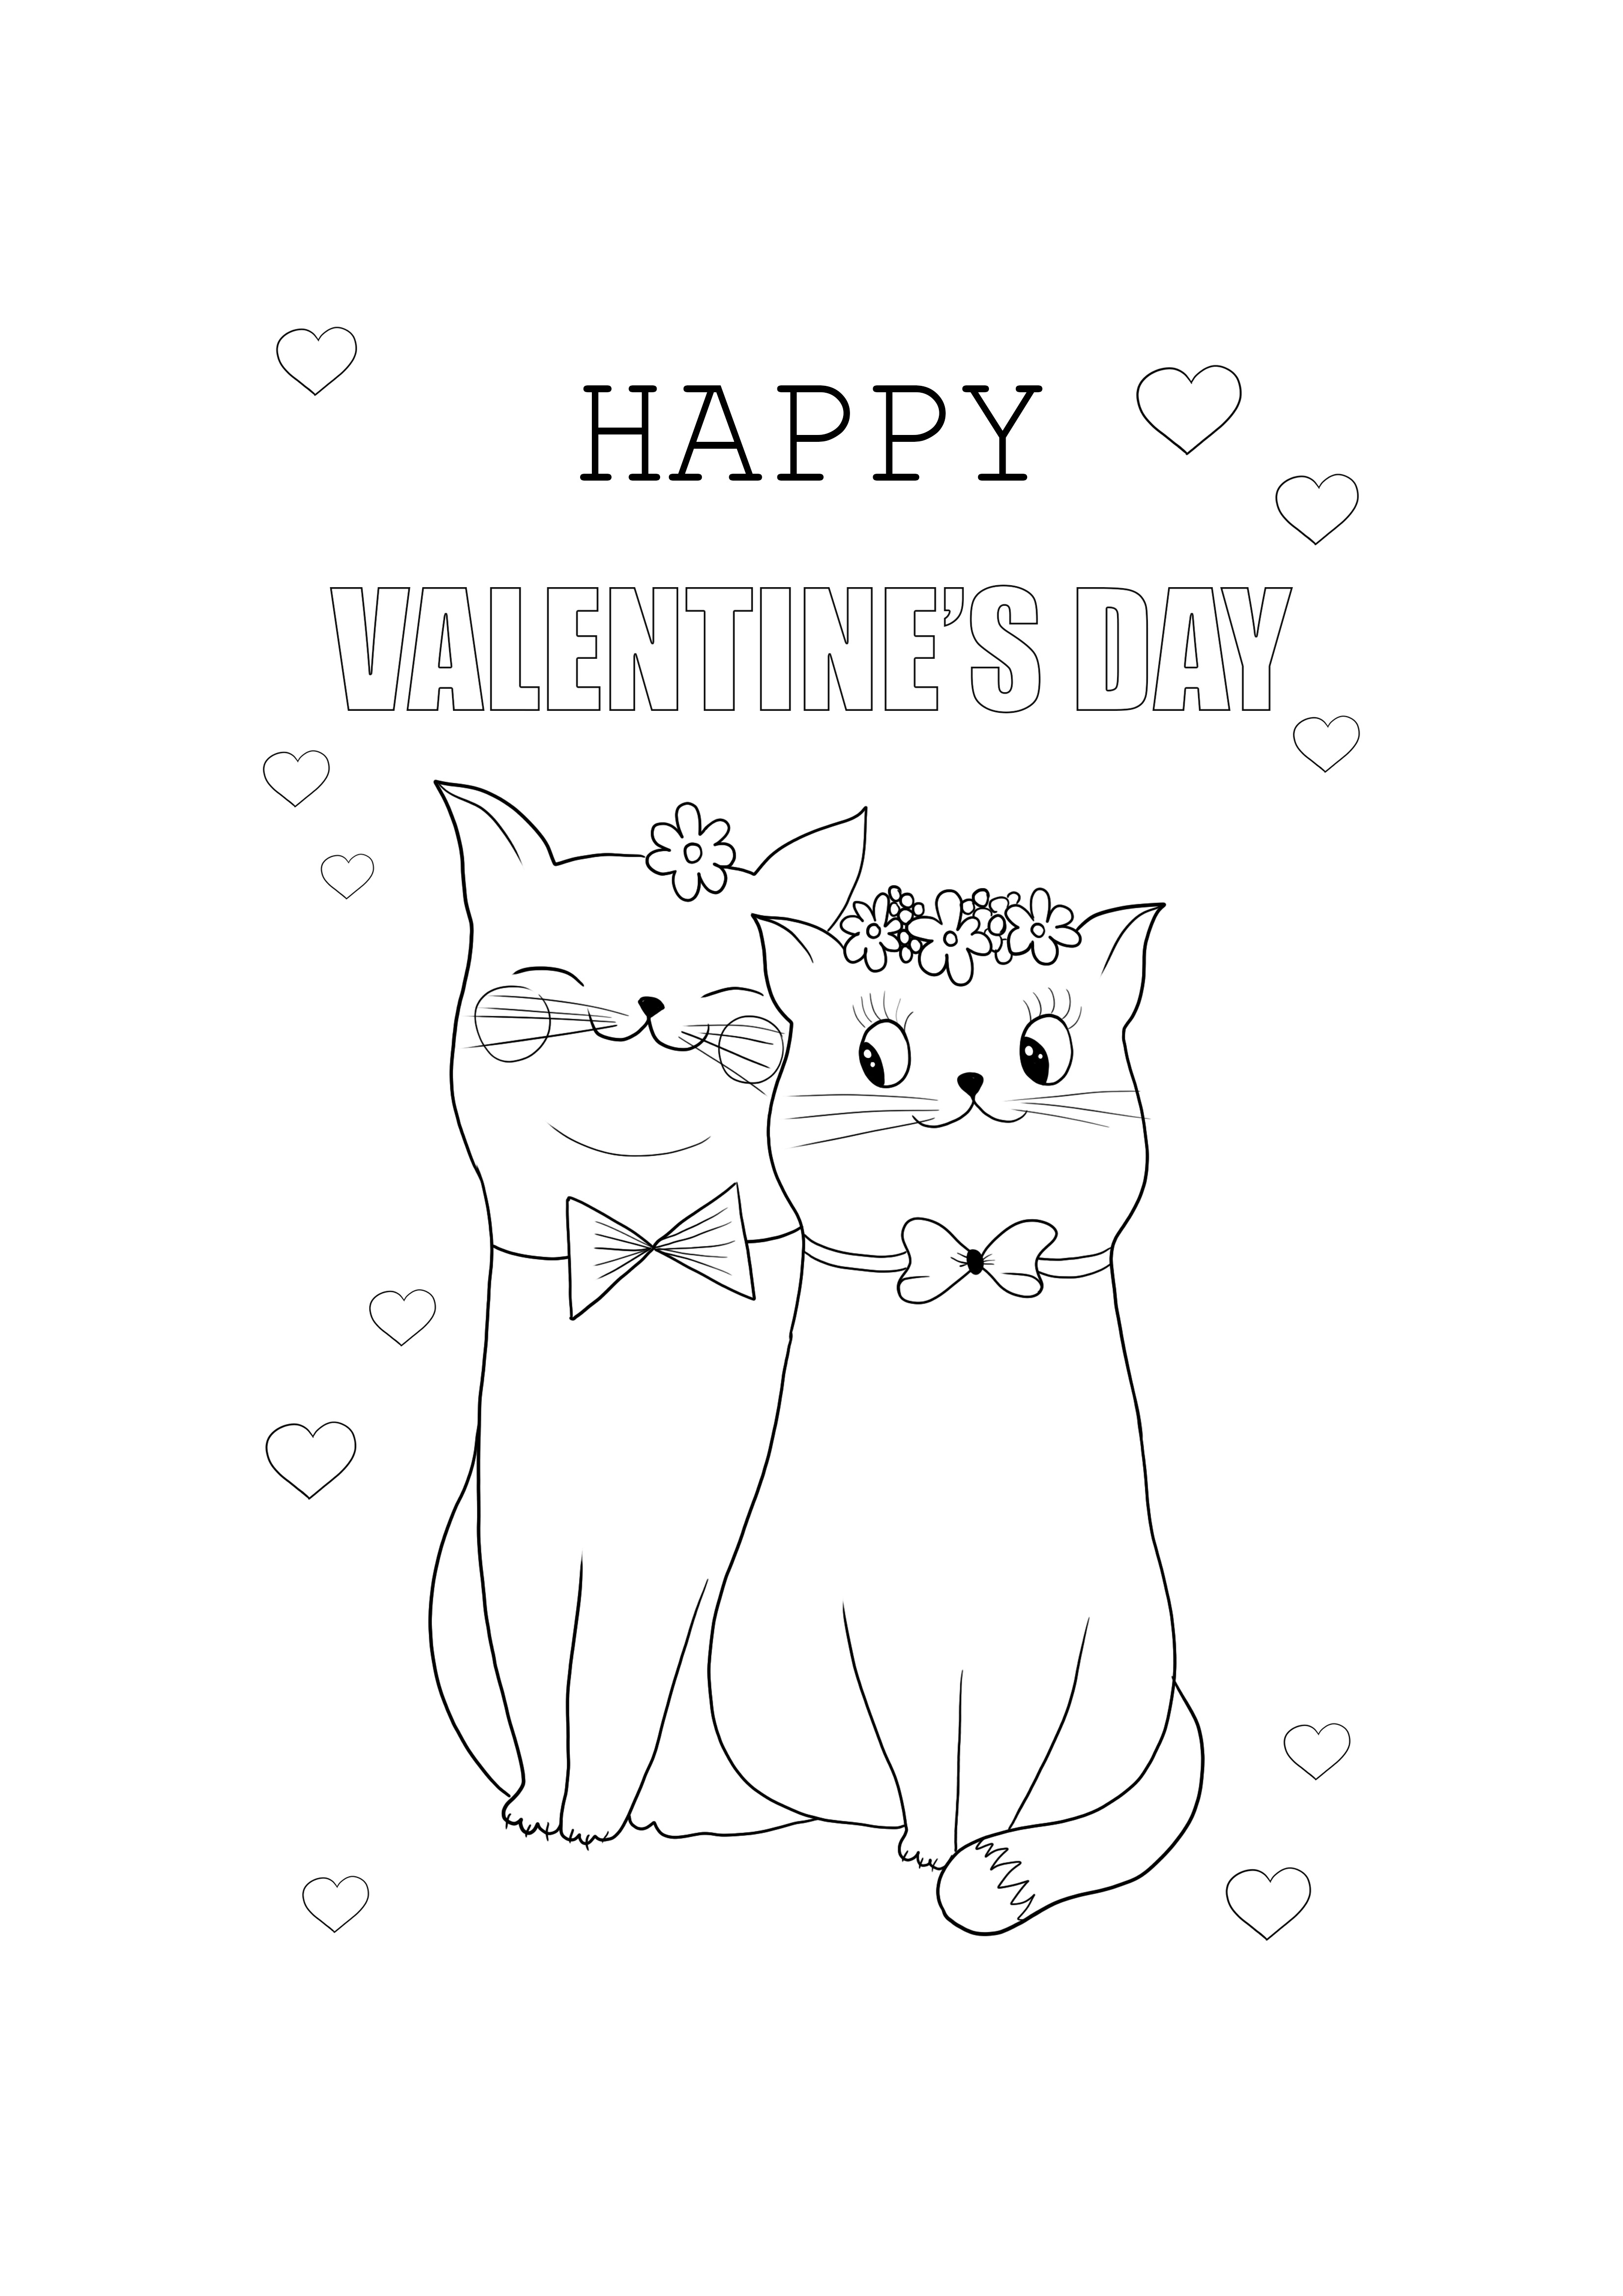 Kartu kucing lucu Selamat Hari Valentine untuk diwarnai dan diunduh secara gratis